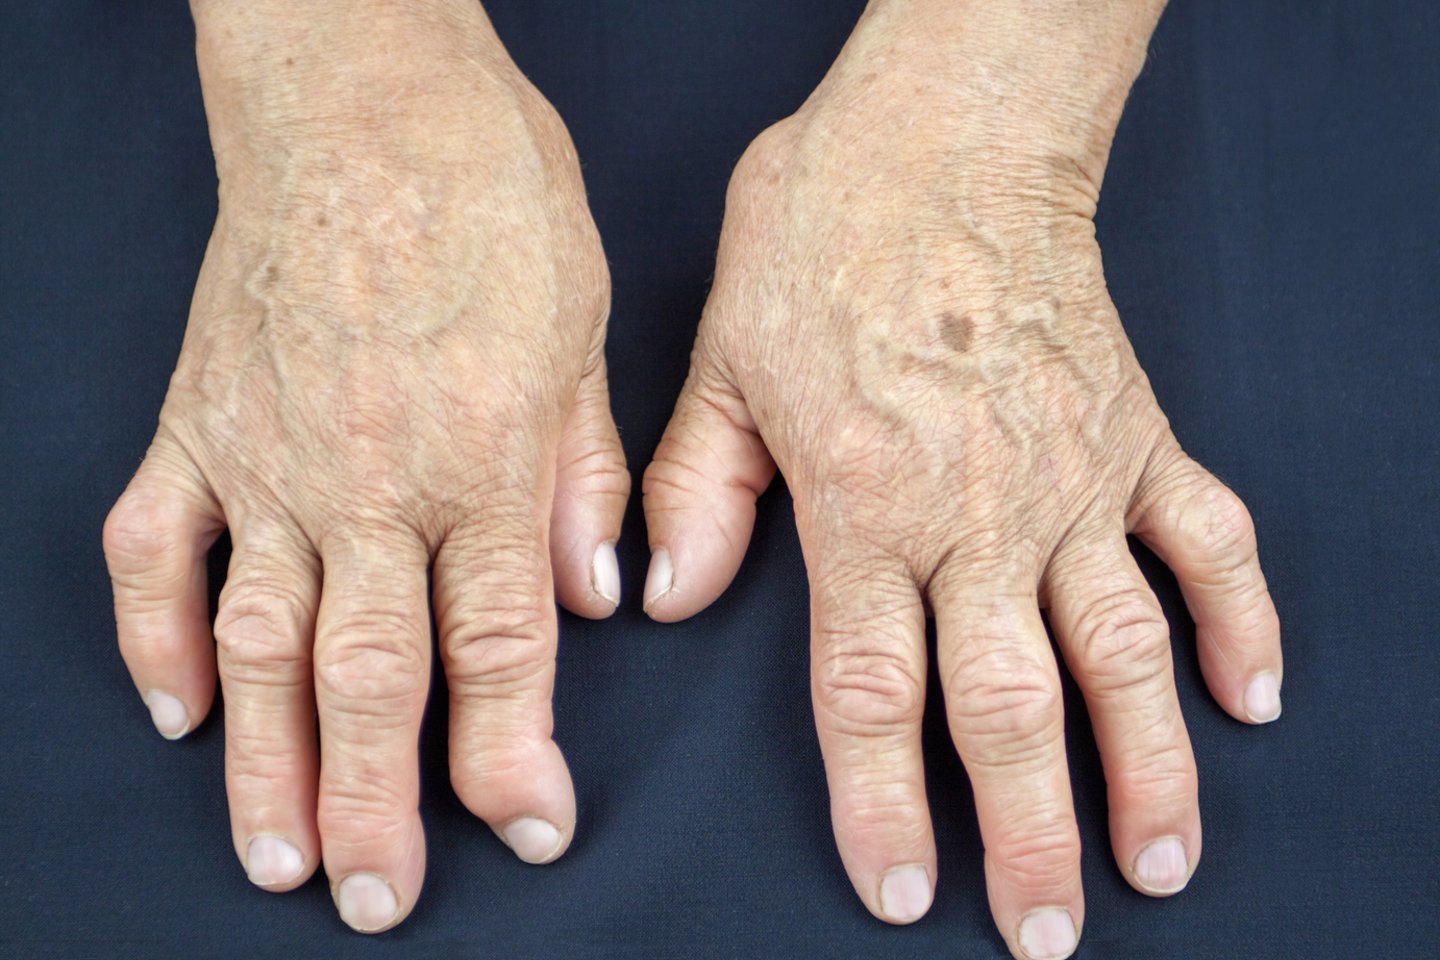 artritas artrozė gydymas namuose sąlygos nuospauda ar karpa